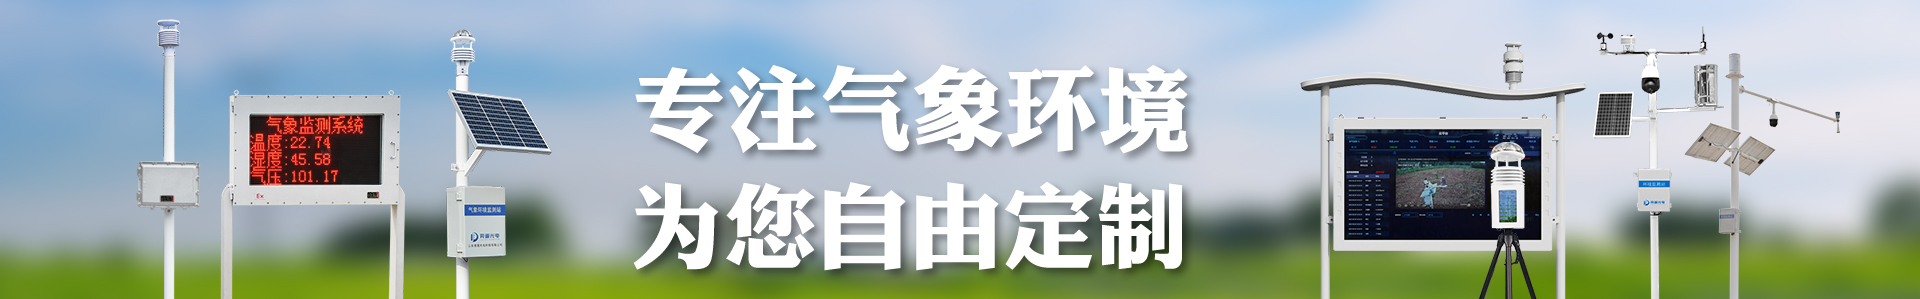 卫星气象水文数据广播接收设备-自动气象站-小型气象站-防爆气象站-光伏气象站-开元旗牌·(中国)官方网站